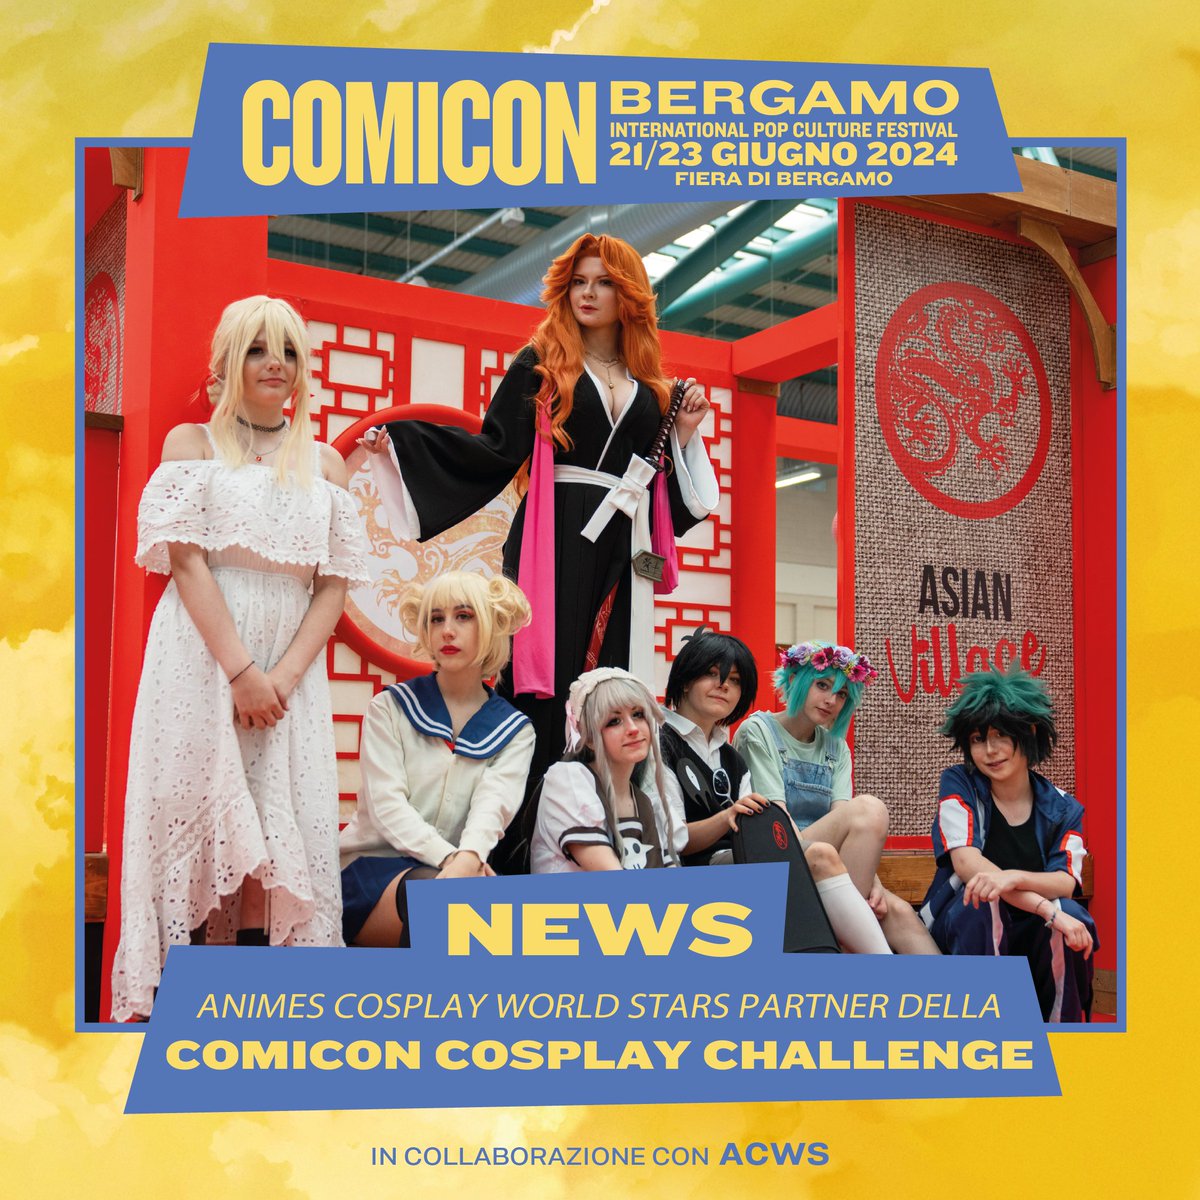 Domenica 23 giugno ore 16:00 a COMICON Bergamo, avrete la possibilità di gareggiare alla consueta COMICON Cosplay Challenge e diventare i rappresentanti italiani a Sofia, Bulgaria, durante l'AnimeS Cosplay World Stars, nuovo partner di COMICON. #ACWS #comiconbergamo2024